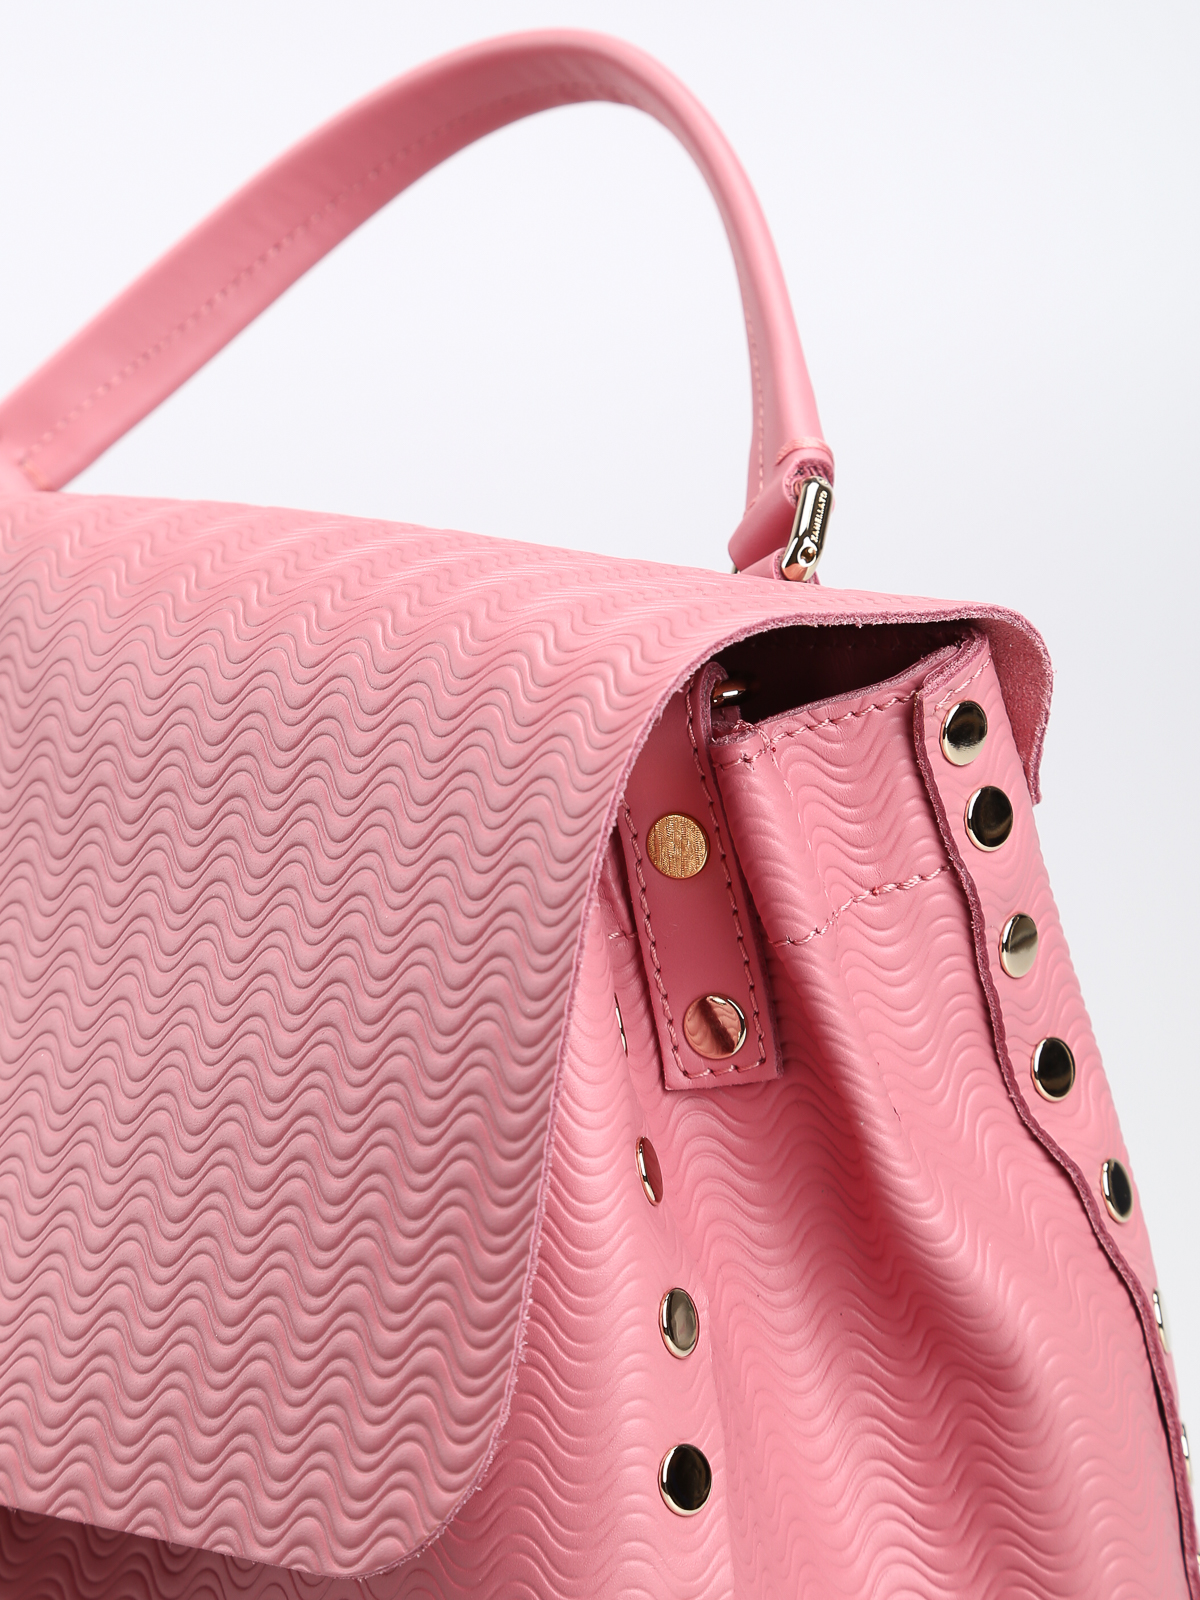 Totes bags Zanellato - Cachemere Blandine Postina pink small bag 